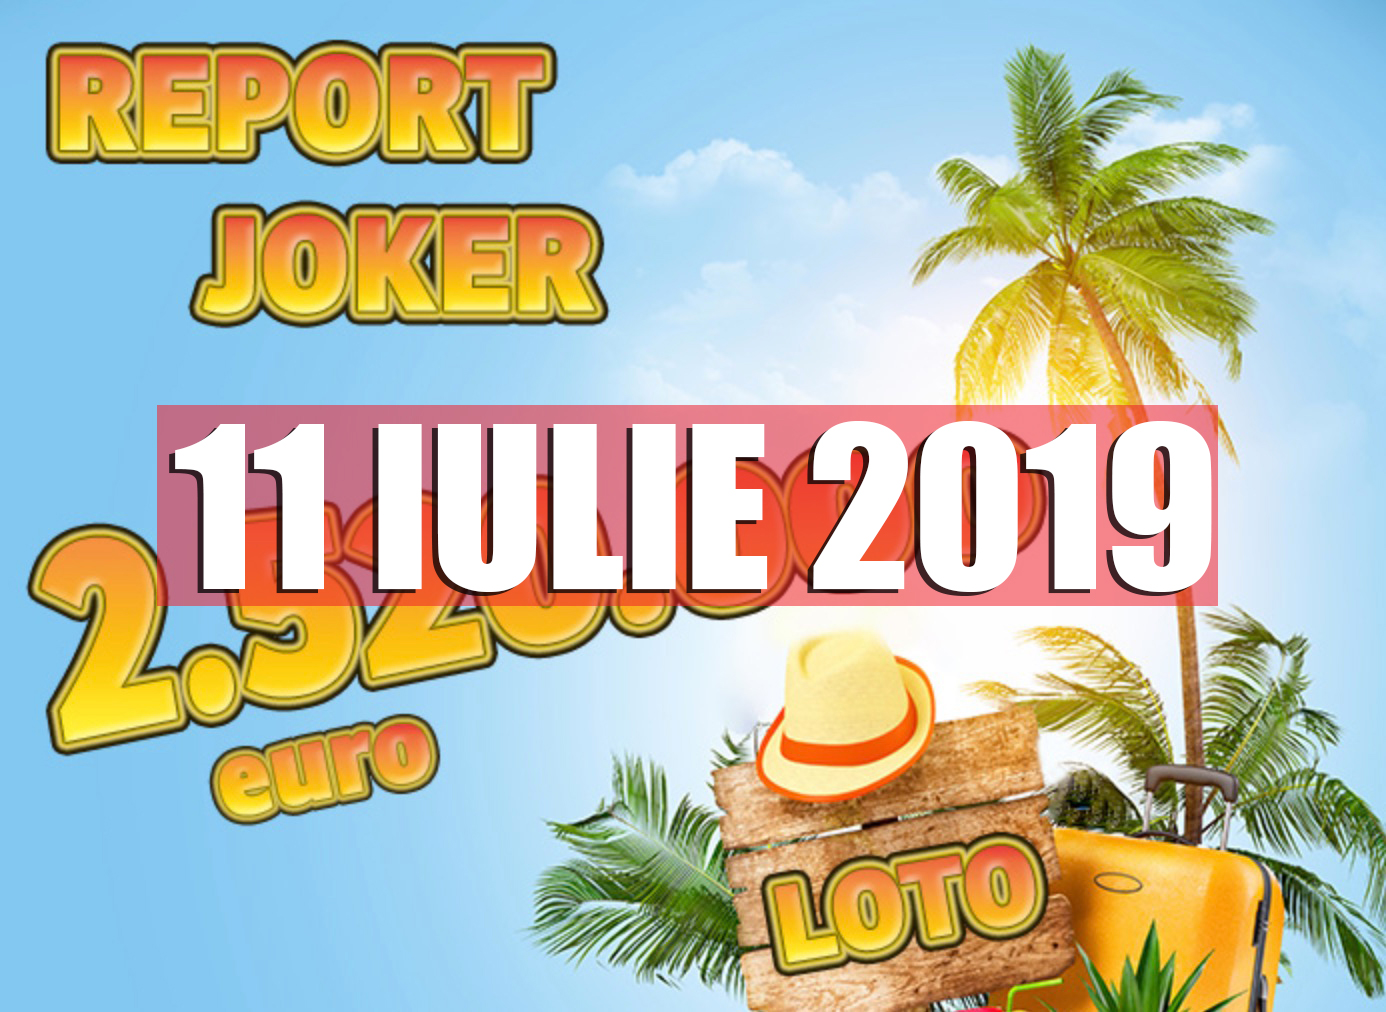 Rezultate loto 11 iulie 2019 6/49 - Report la Joker 2.52M euro. Ce numere au ieșit la 6 din 49